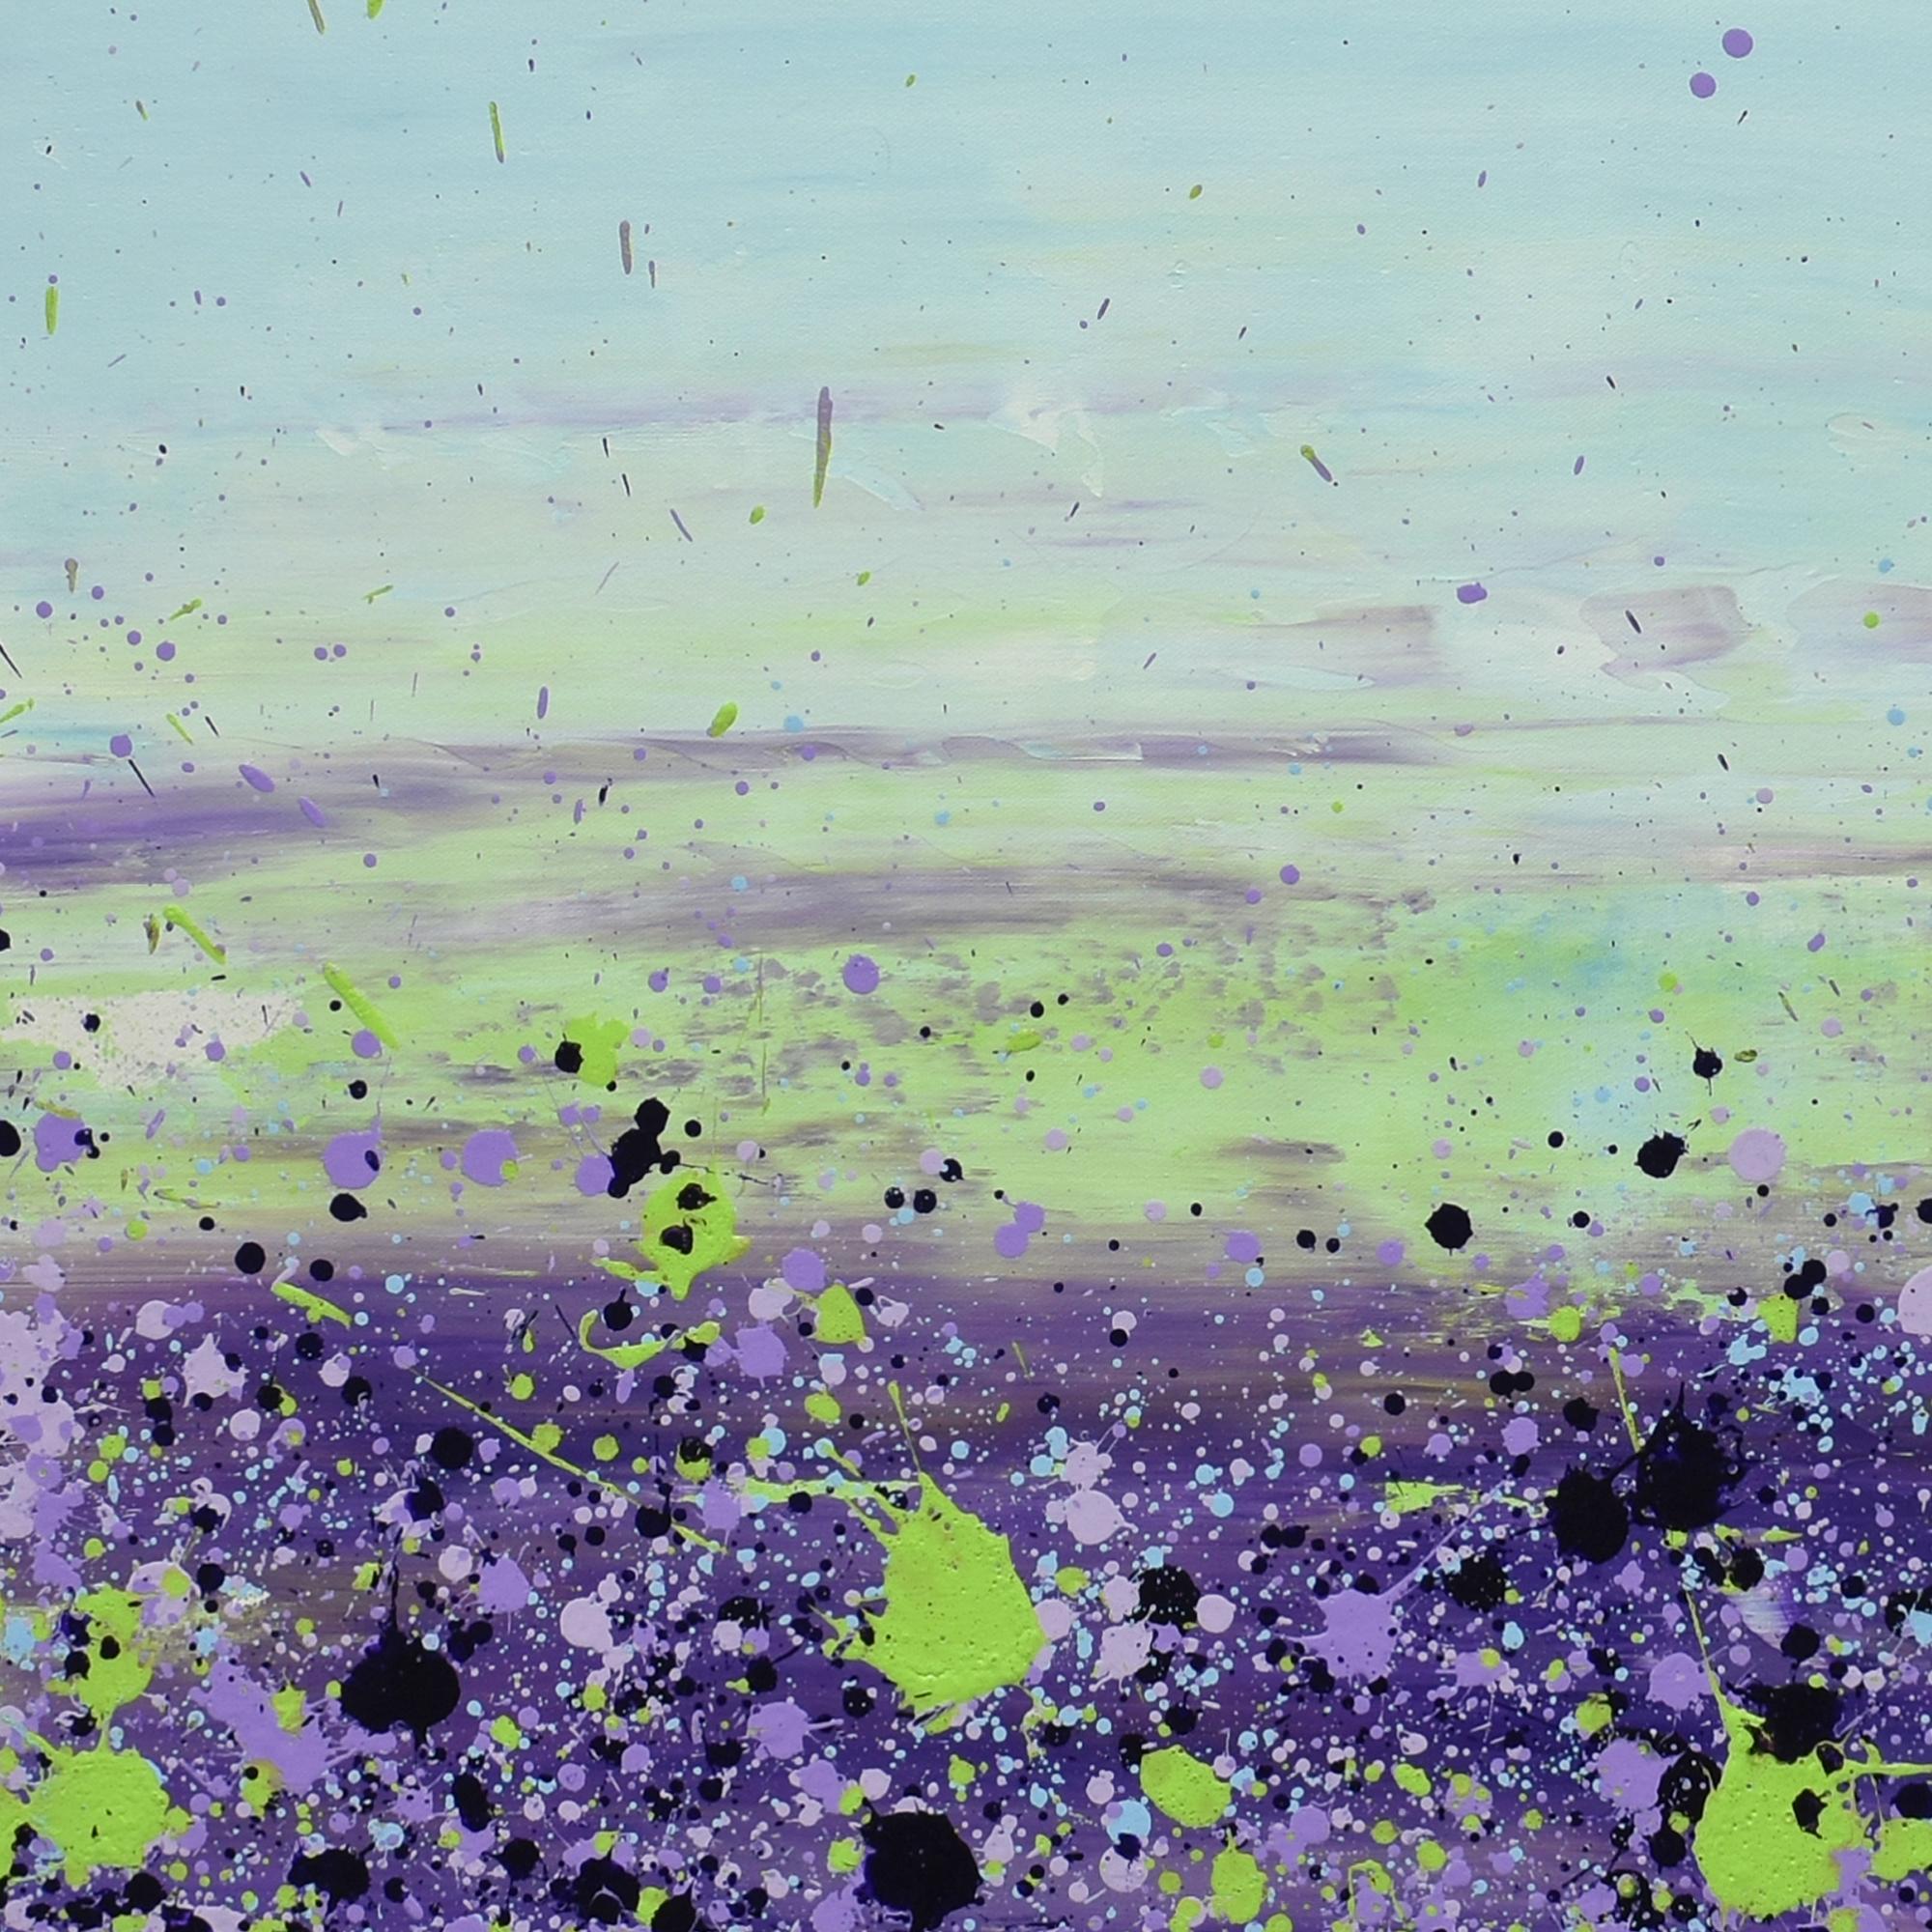 <p>Commentaires de l'artiste<br>L'artiste Lisa Carney présente une œuvre abstraite florale composée de feuilles vertes et violettes. Fait partie de sa série GeoFlora, des abstractions dynamiques composées de gouttes et d'éclaboussures. La